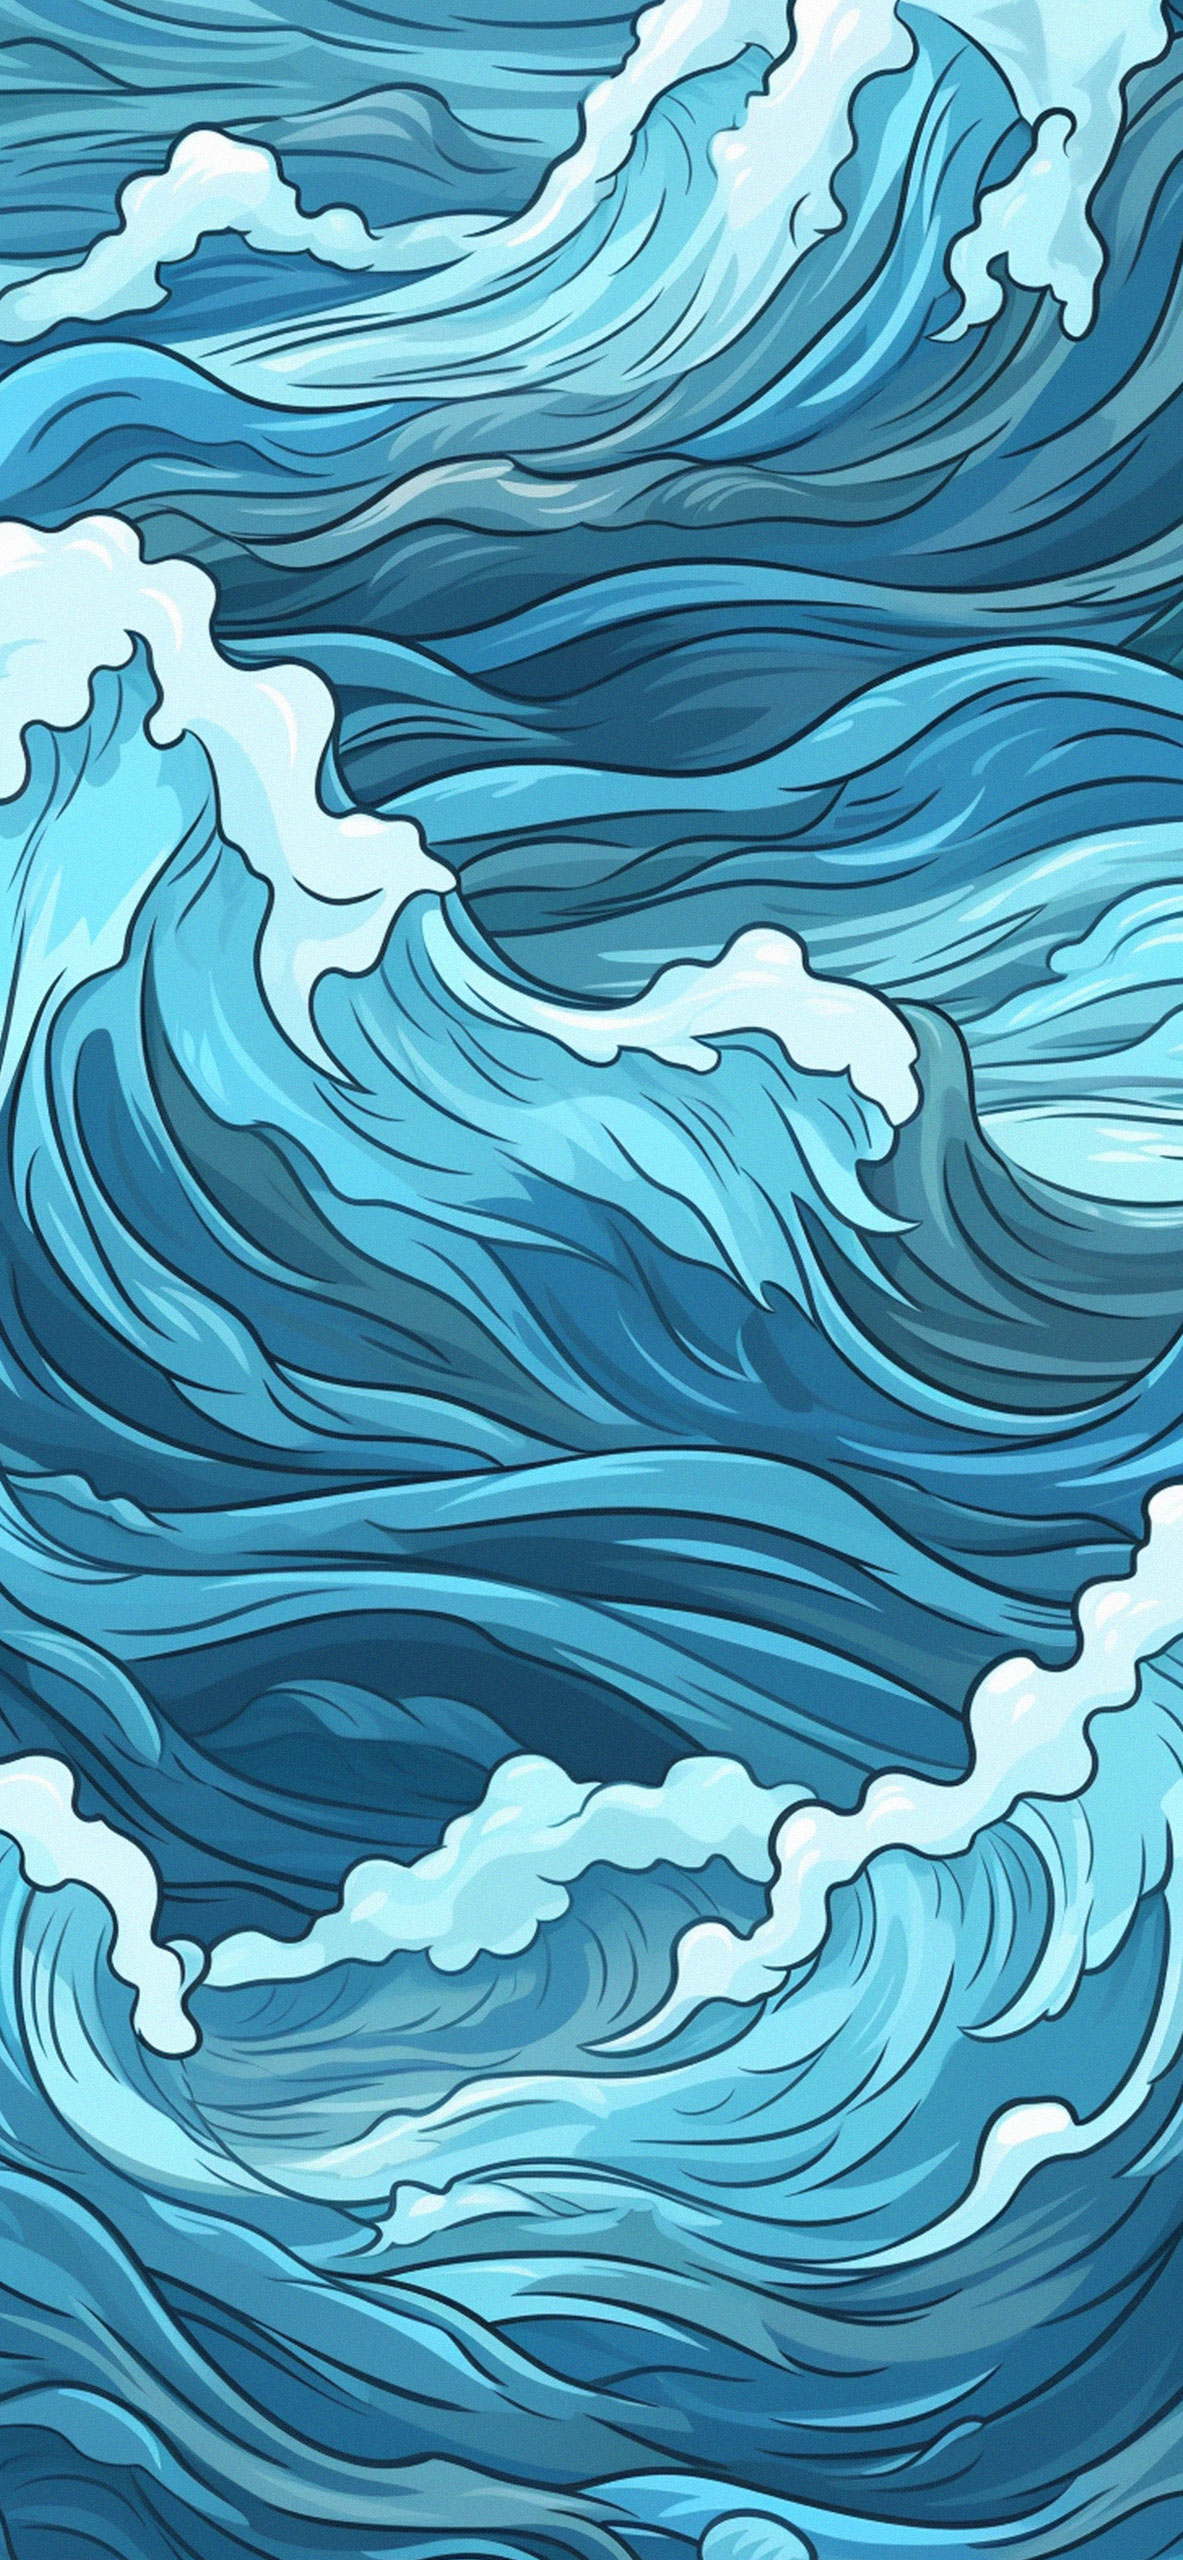 Water pattern cartoon wallpaper Blue art water wallpaper iPhon